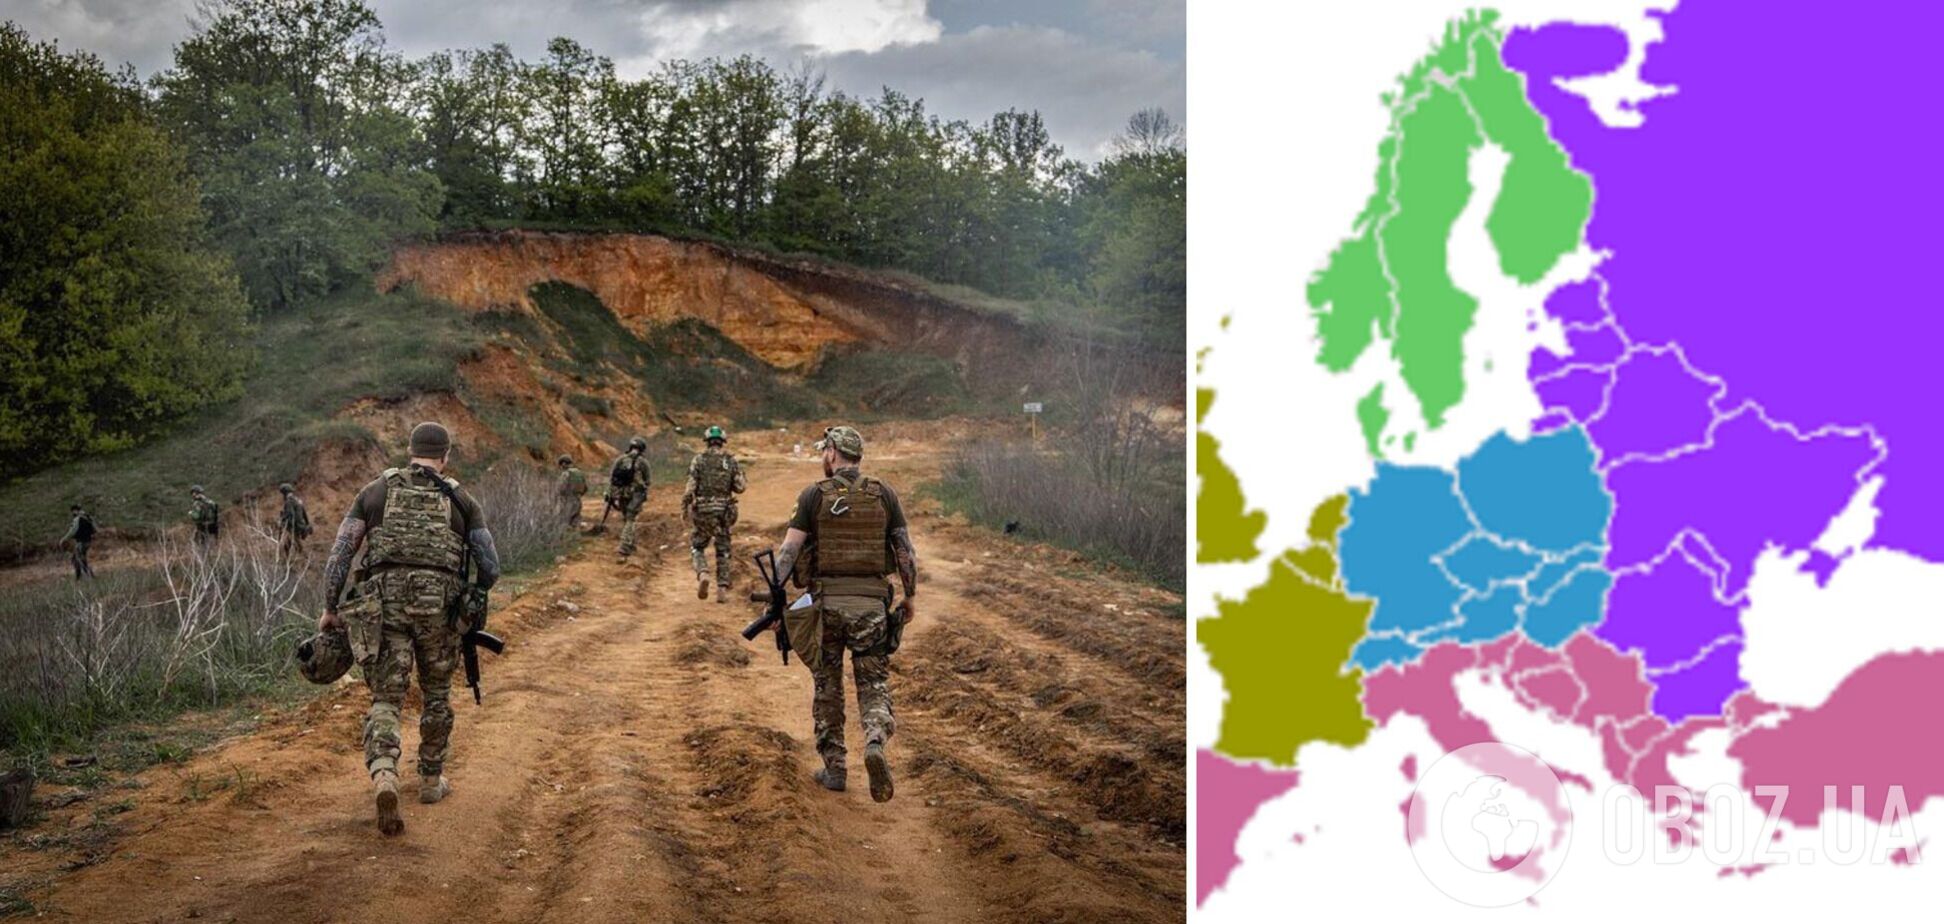 2450 км и четыре страны: линию фронта в Украине показали на примере Европы. Инфографика